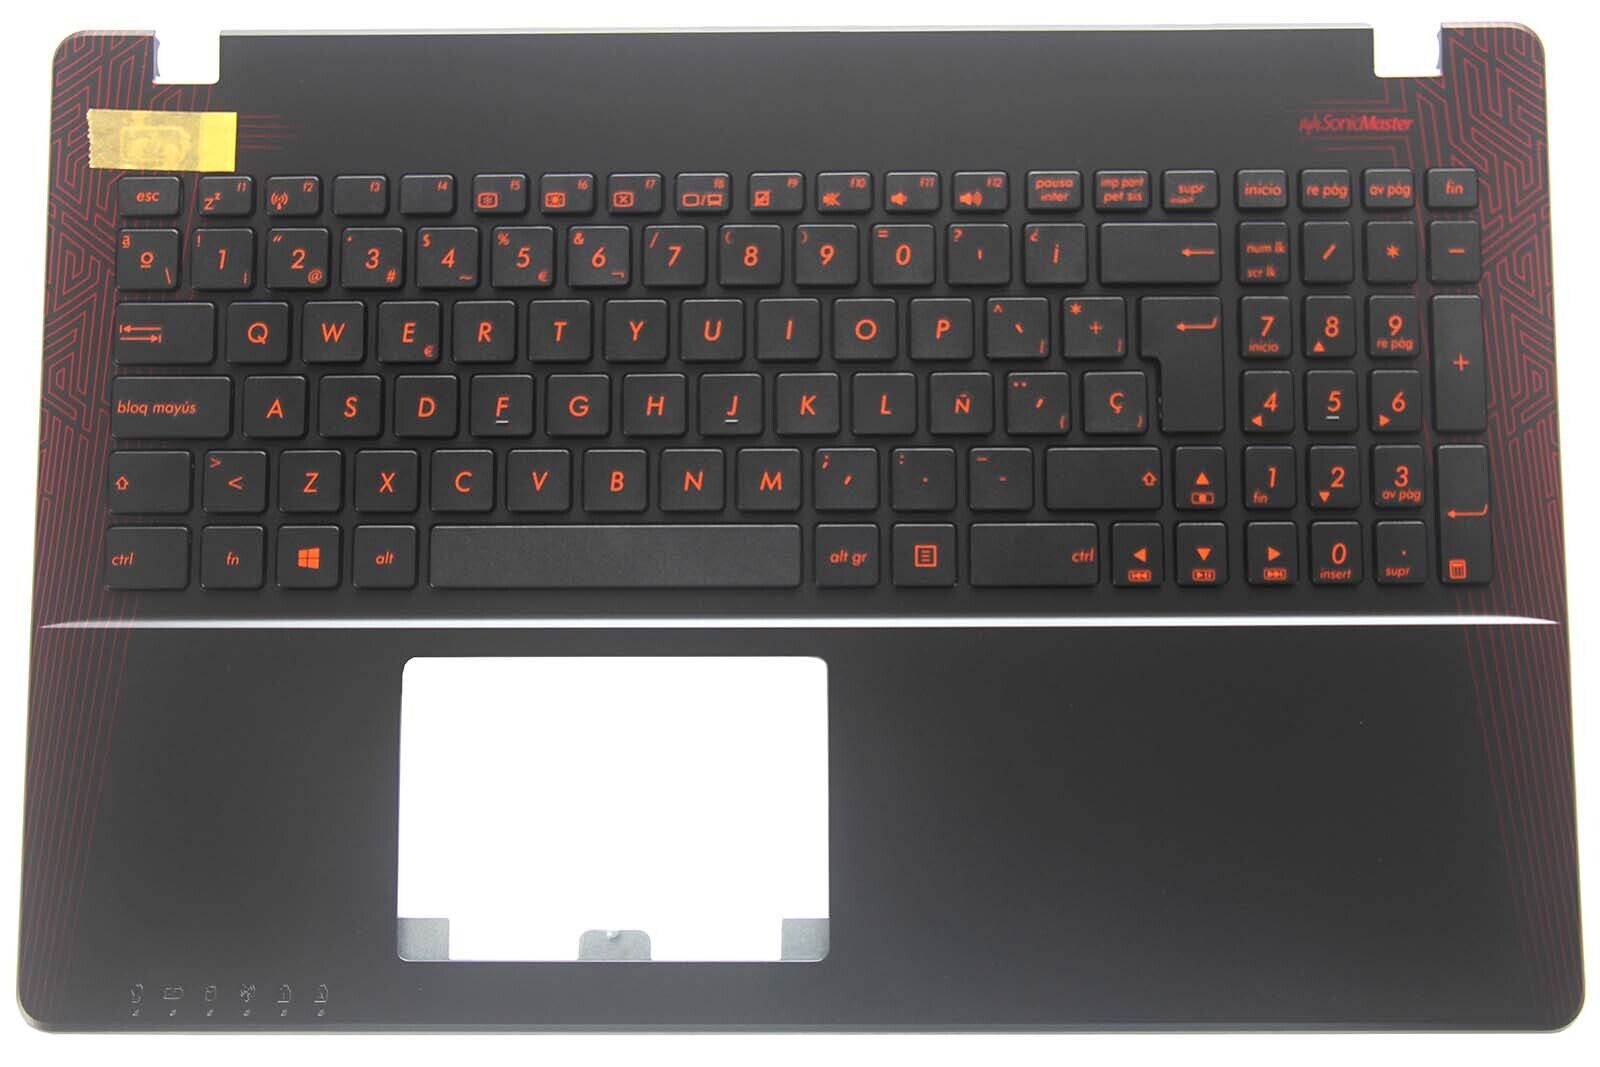 Teclado Spanish Latin Keyboard for Asus X550C X550CA X550EA X550J D552J Palmrest